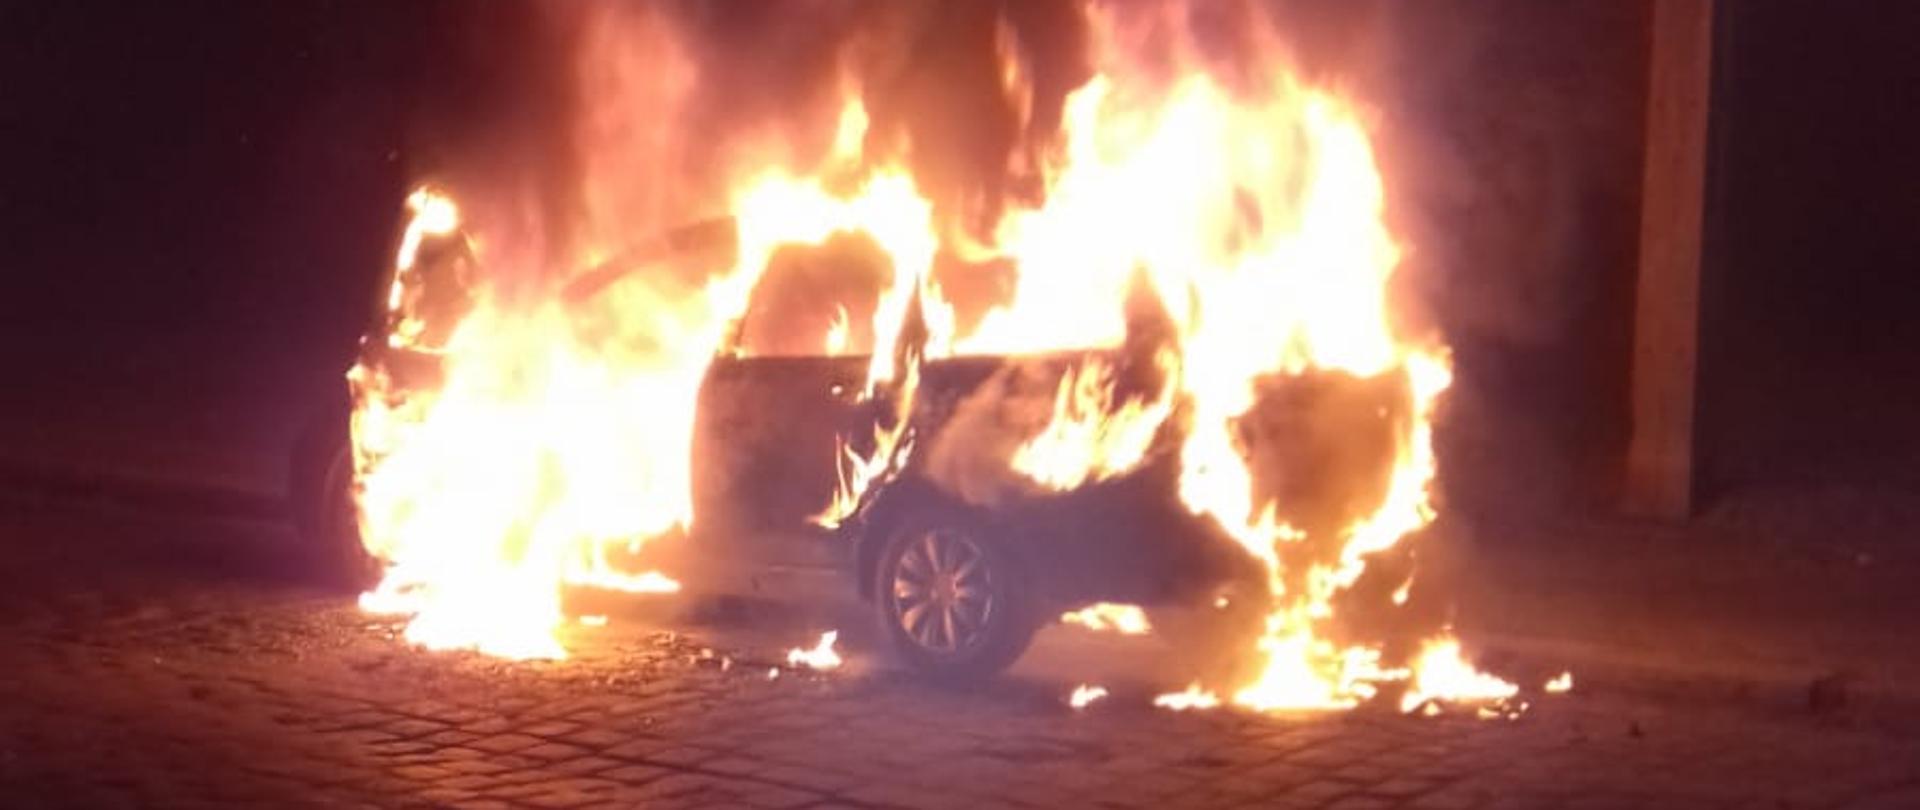 Zdjęcie przedstawia samochód osobowy z otwartymi przednimi drzwiami kierowcy, który w całości objęty jest pożarem. Pojazd znajduje się na brukowej drodze dojazdowej